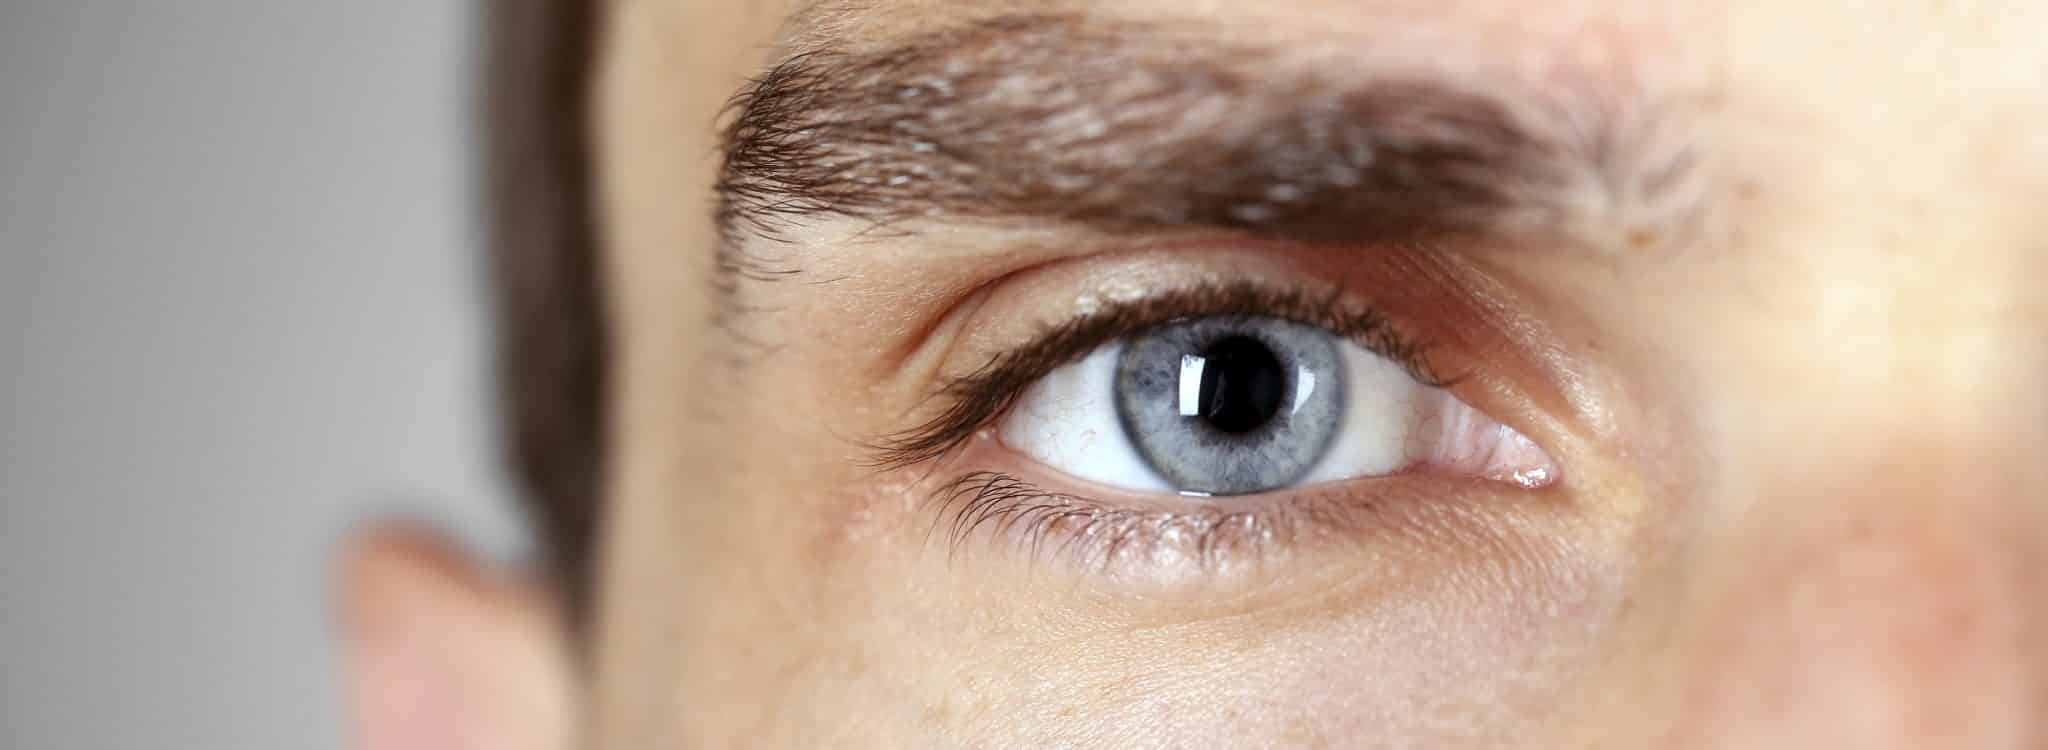 Un nuevo estudio relaciona el glaucoma con altos niveles de ciertas sustancias en el interior del ojo